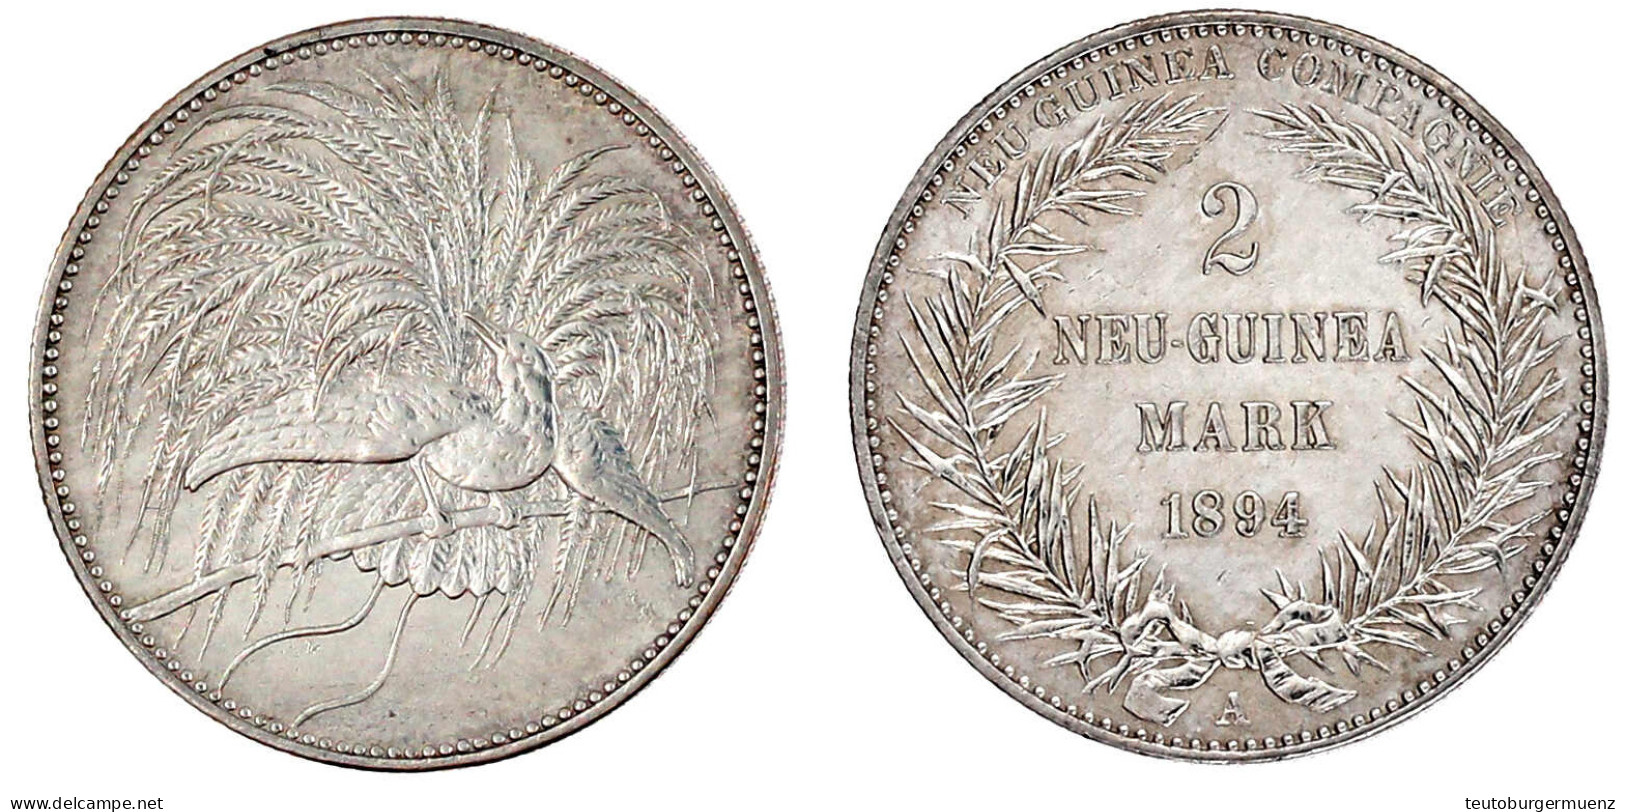 2 Neuguinea-Mark 1894 A, Paradiesvogel. Gutes Vorzüglich, Etwas Berieben. Jaeger 706. - German New Guinea